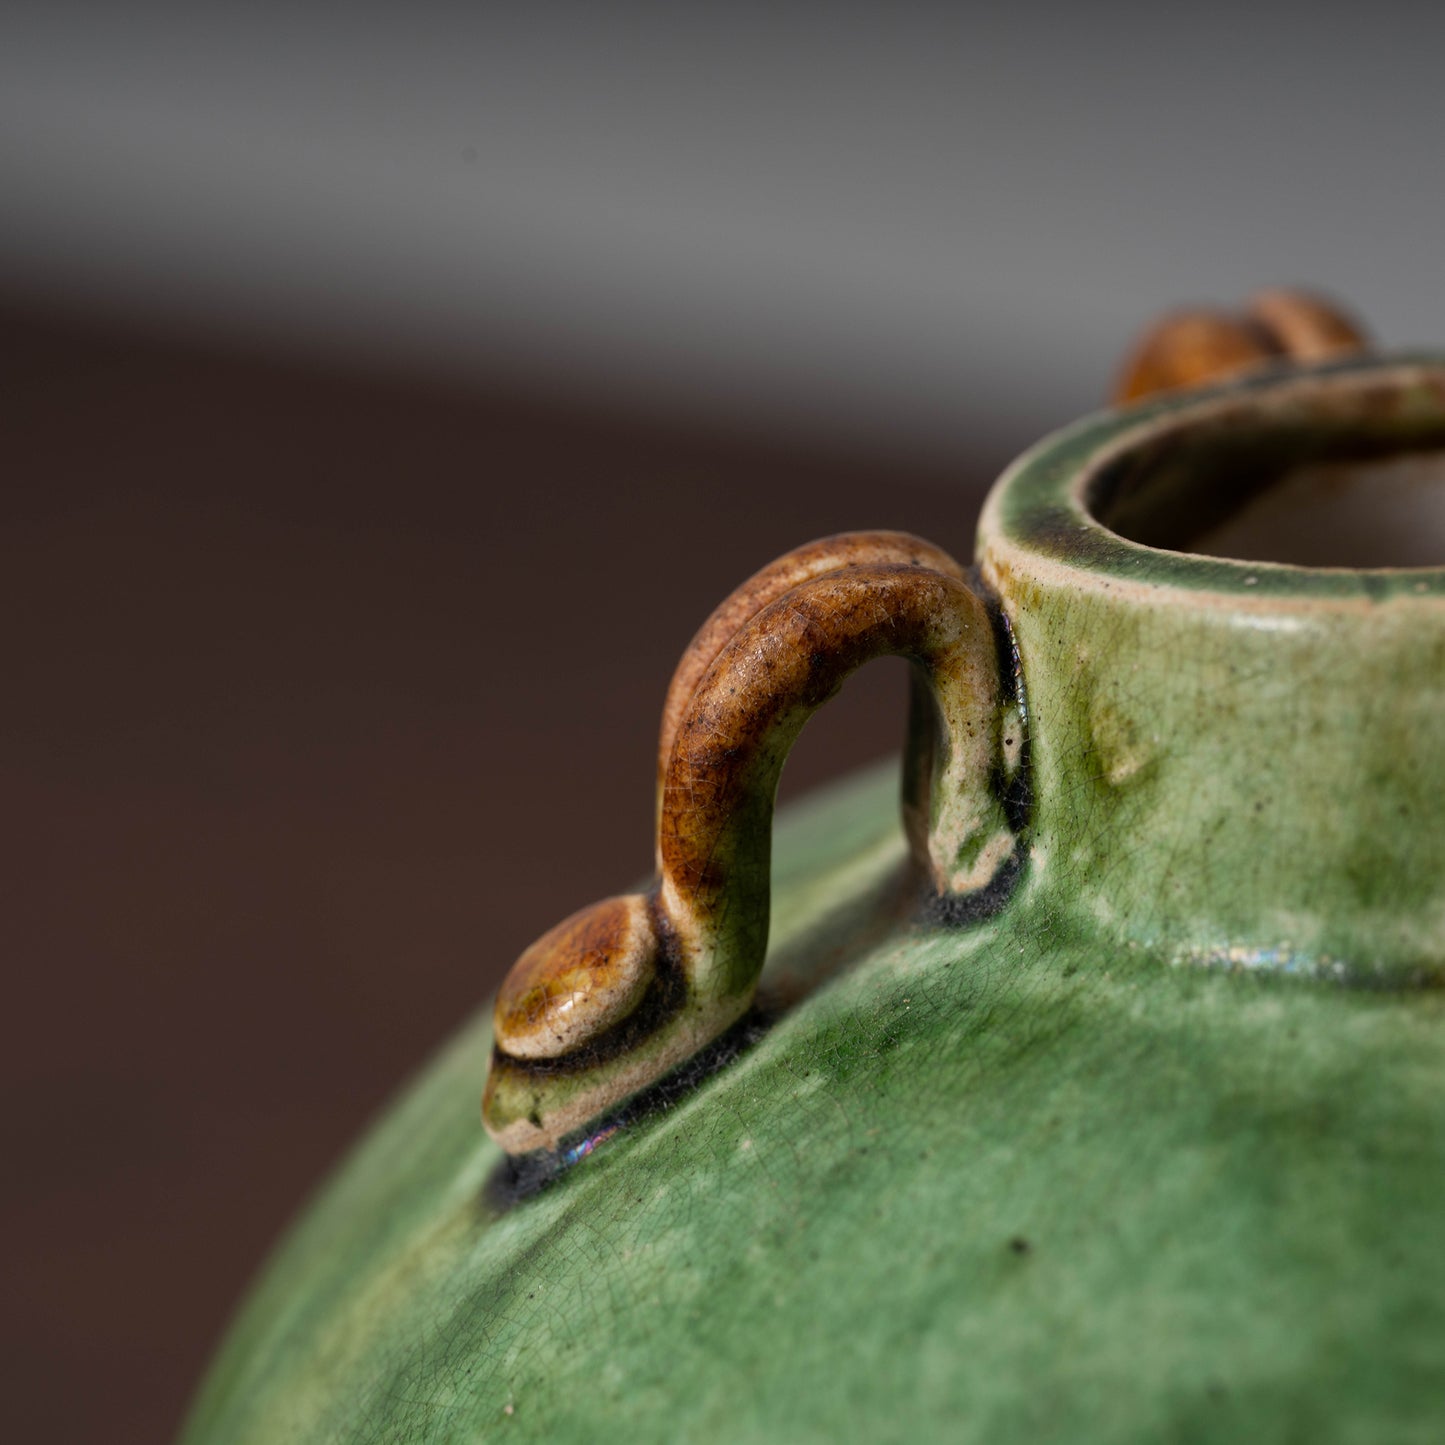 Liao Dynasty Sancai Jar with Four Handles